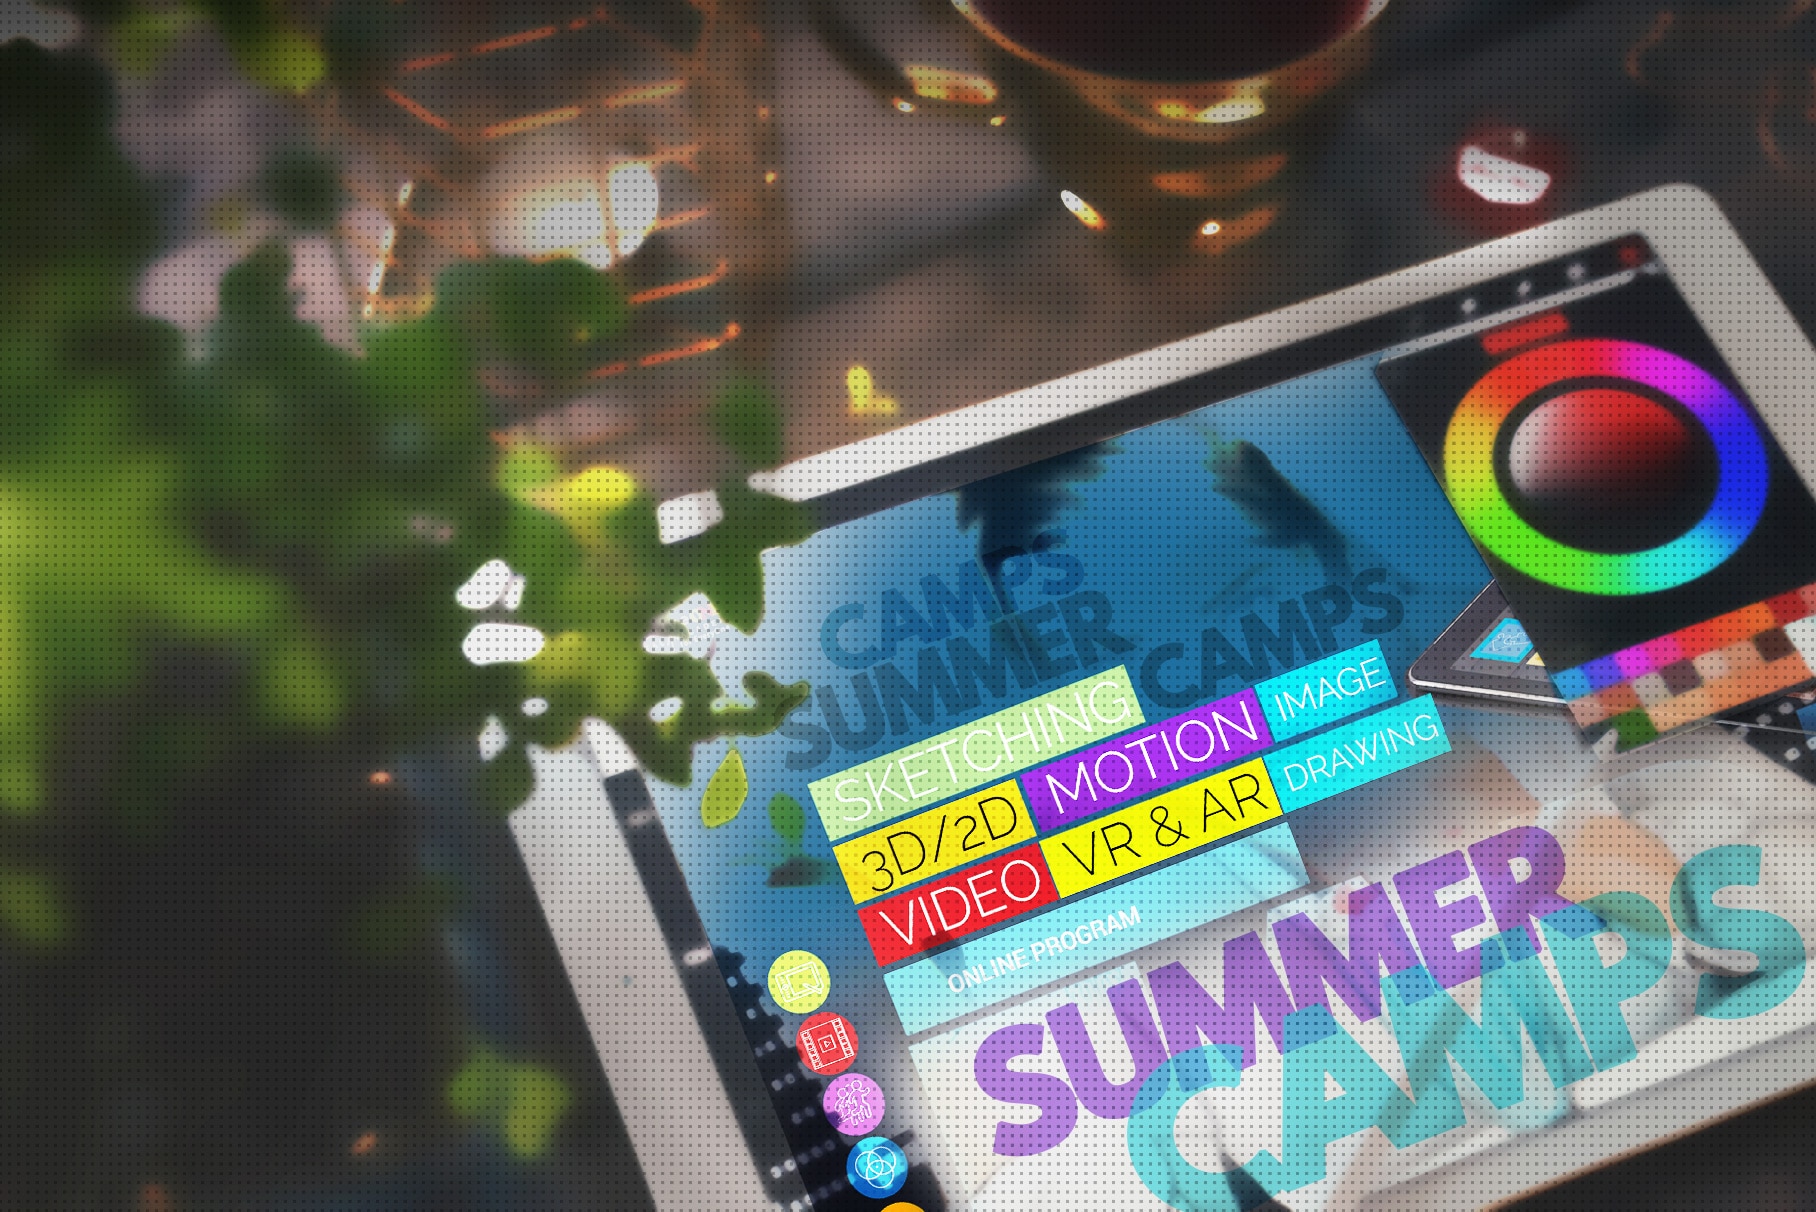 Virtual Summer Camp: 2D Game Design — MODA